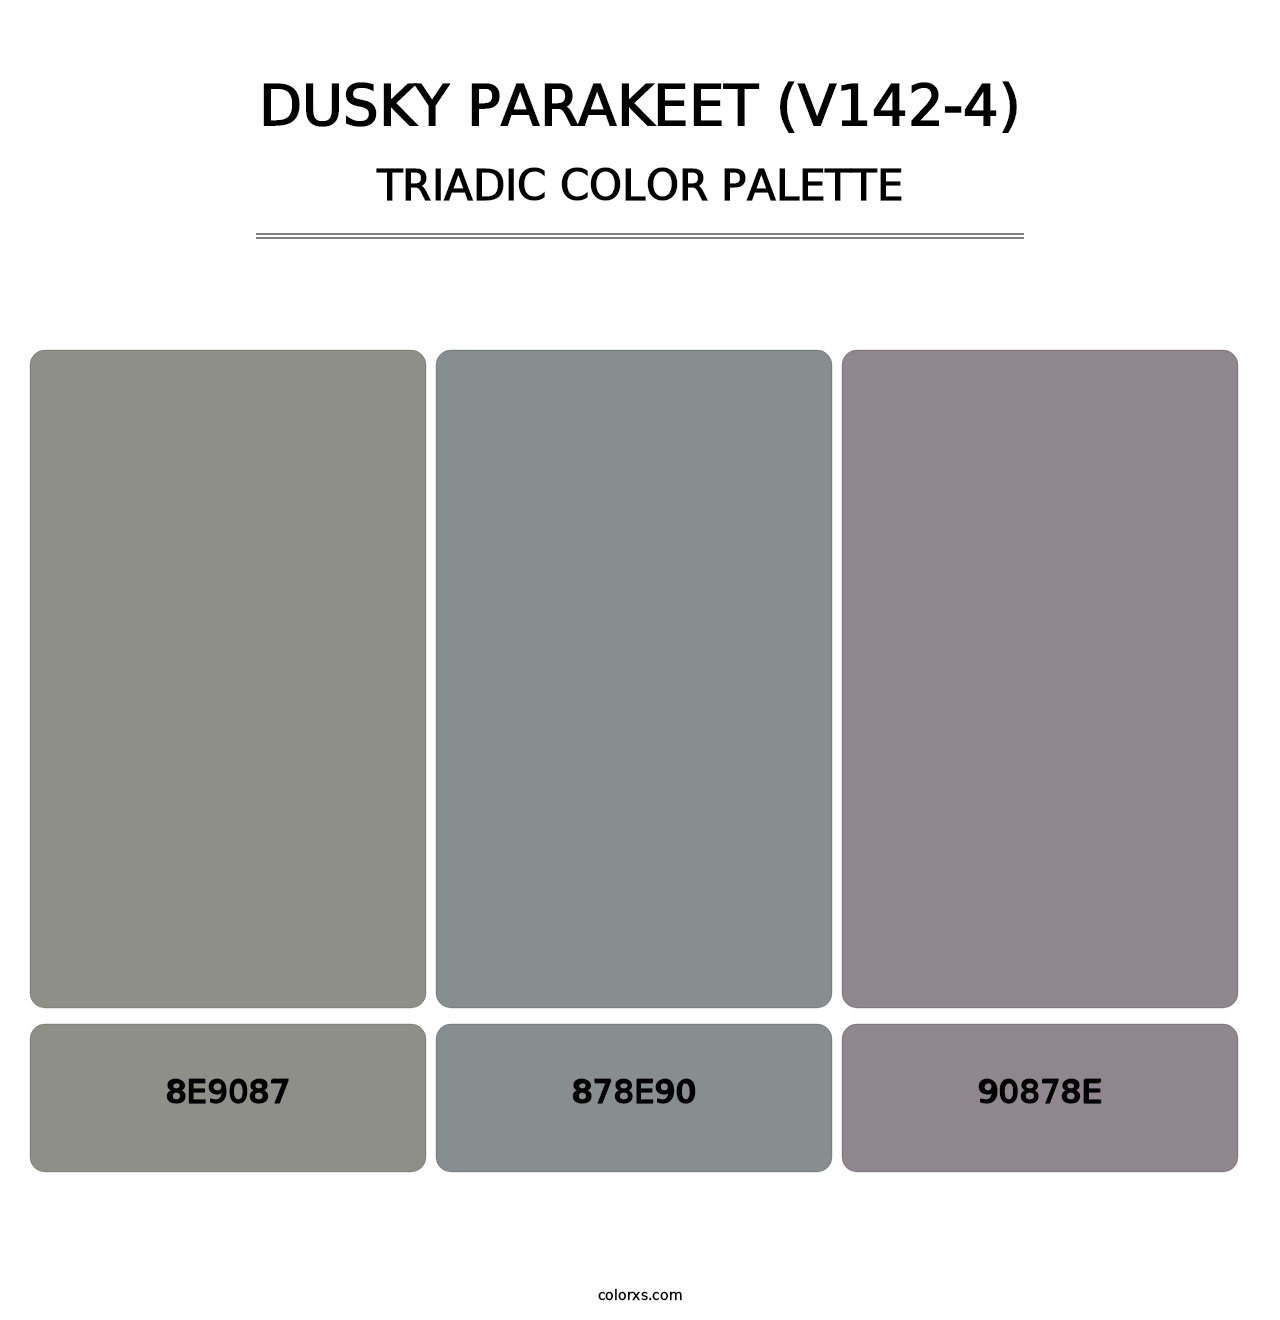 Dusky Parakeet (V142-4) - Triadic Color Palette